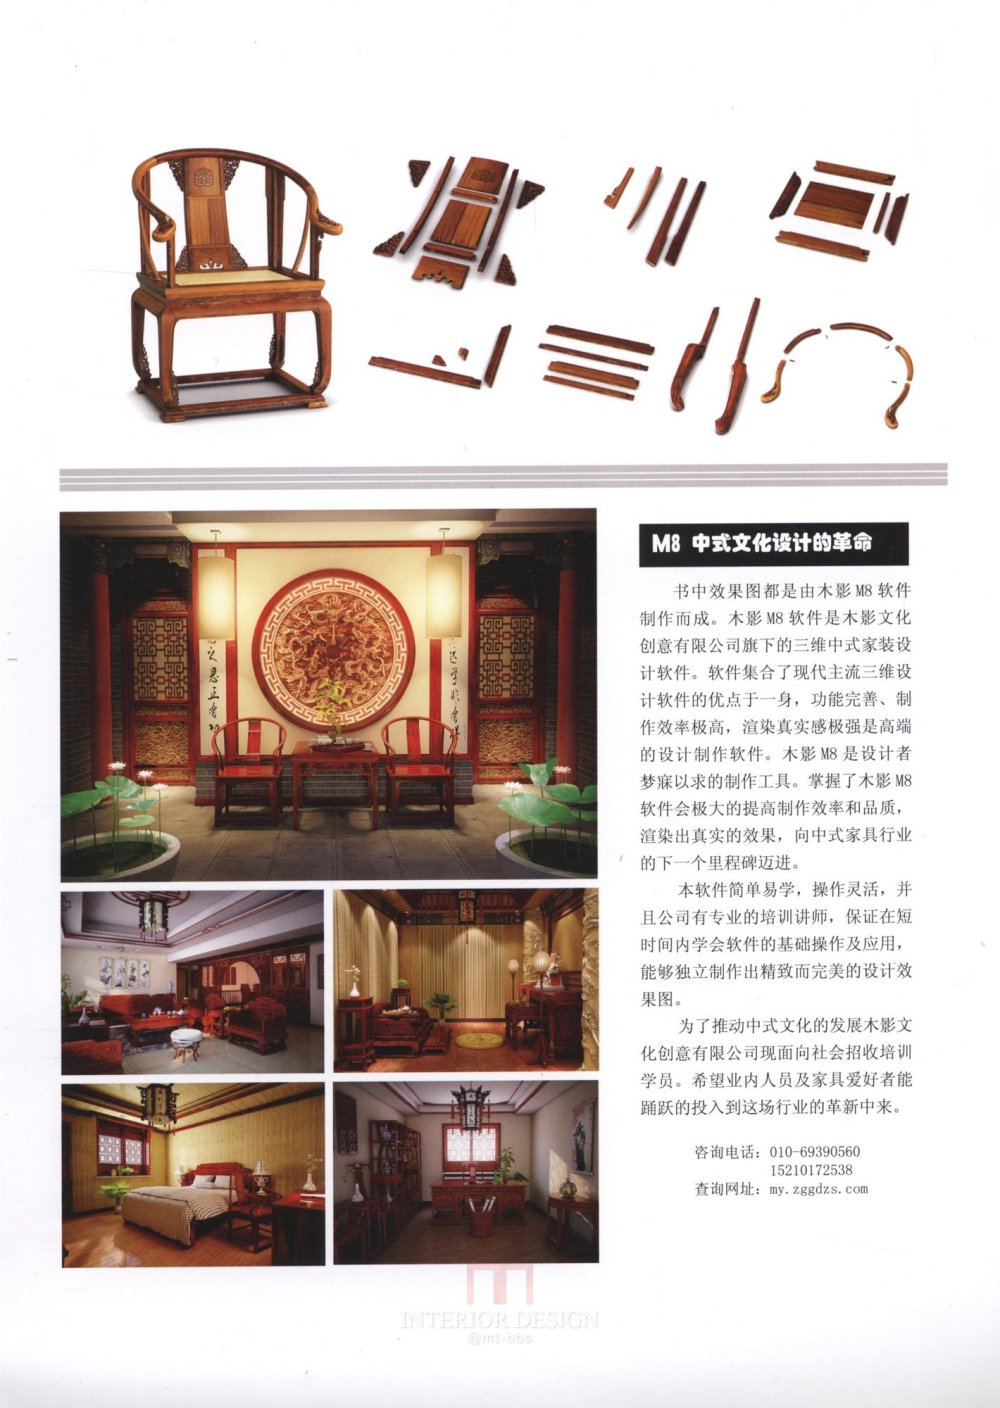 中式家具下册_kobe 0002.jpg